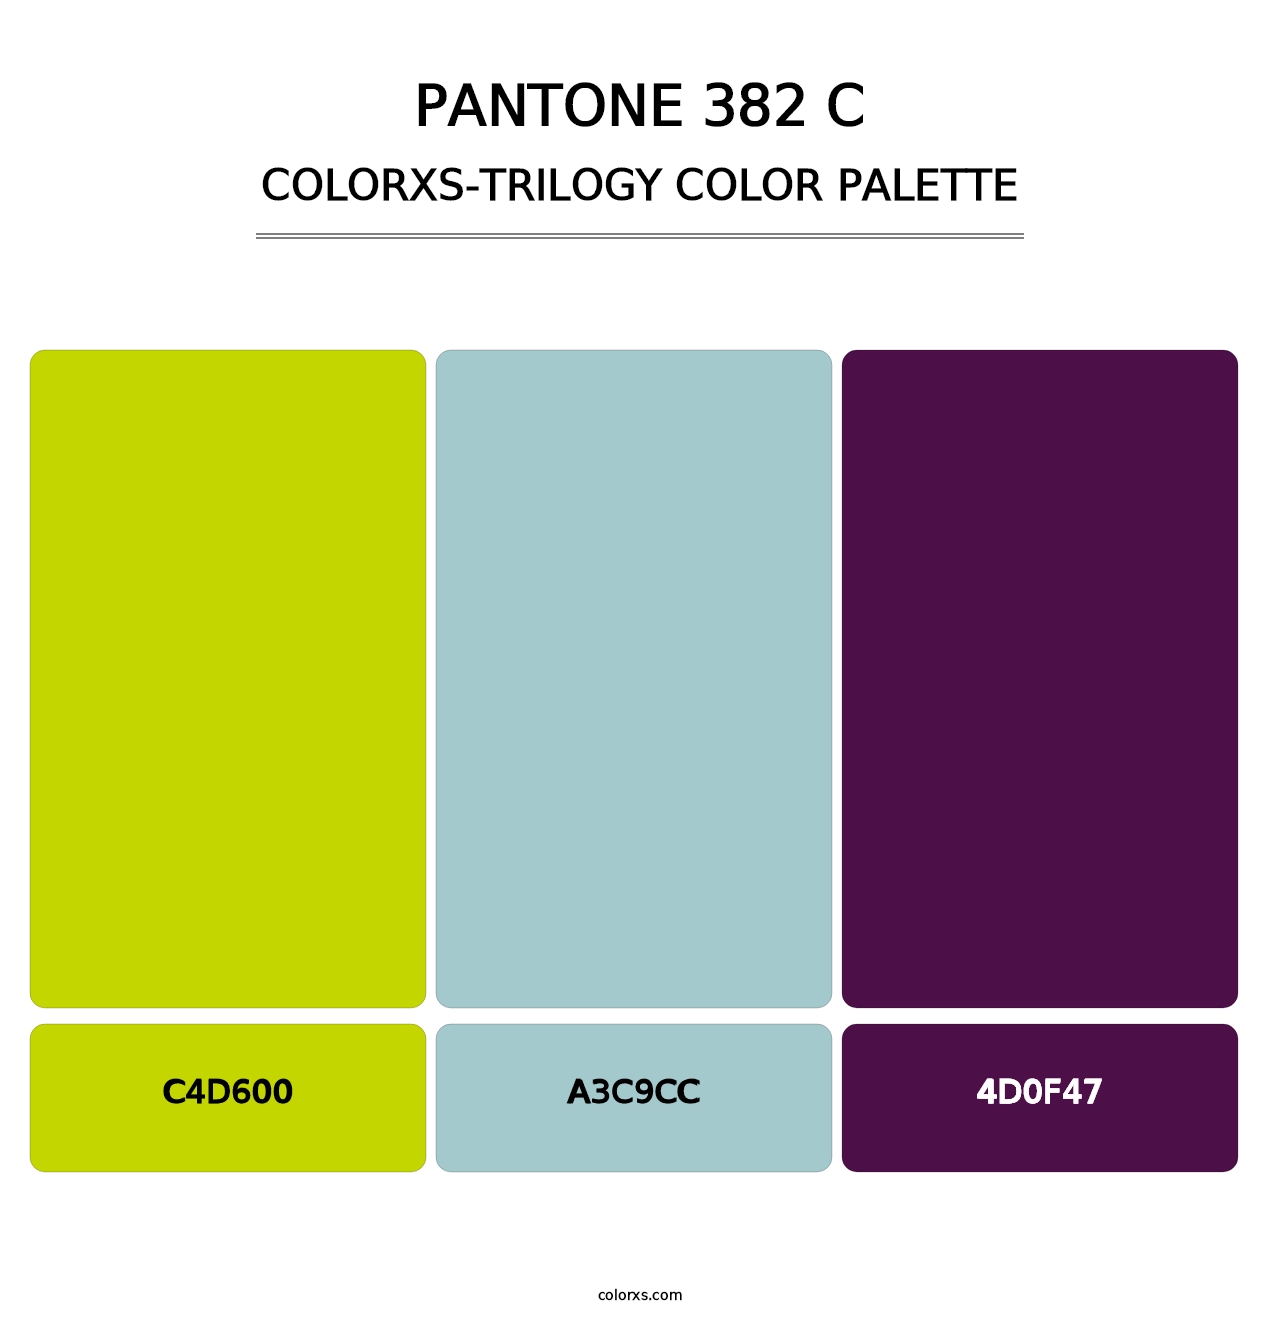 PANTONE 382 C - Colorxs Trilogy Palette